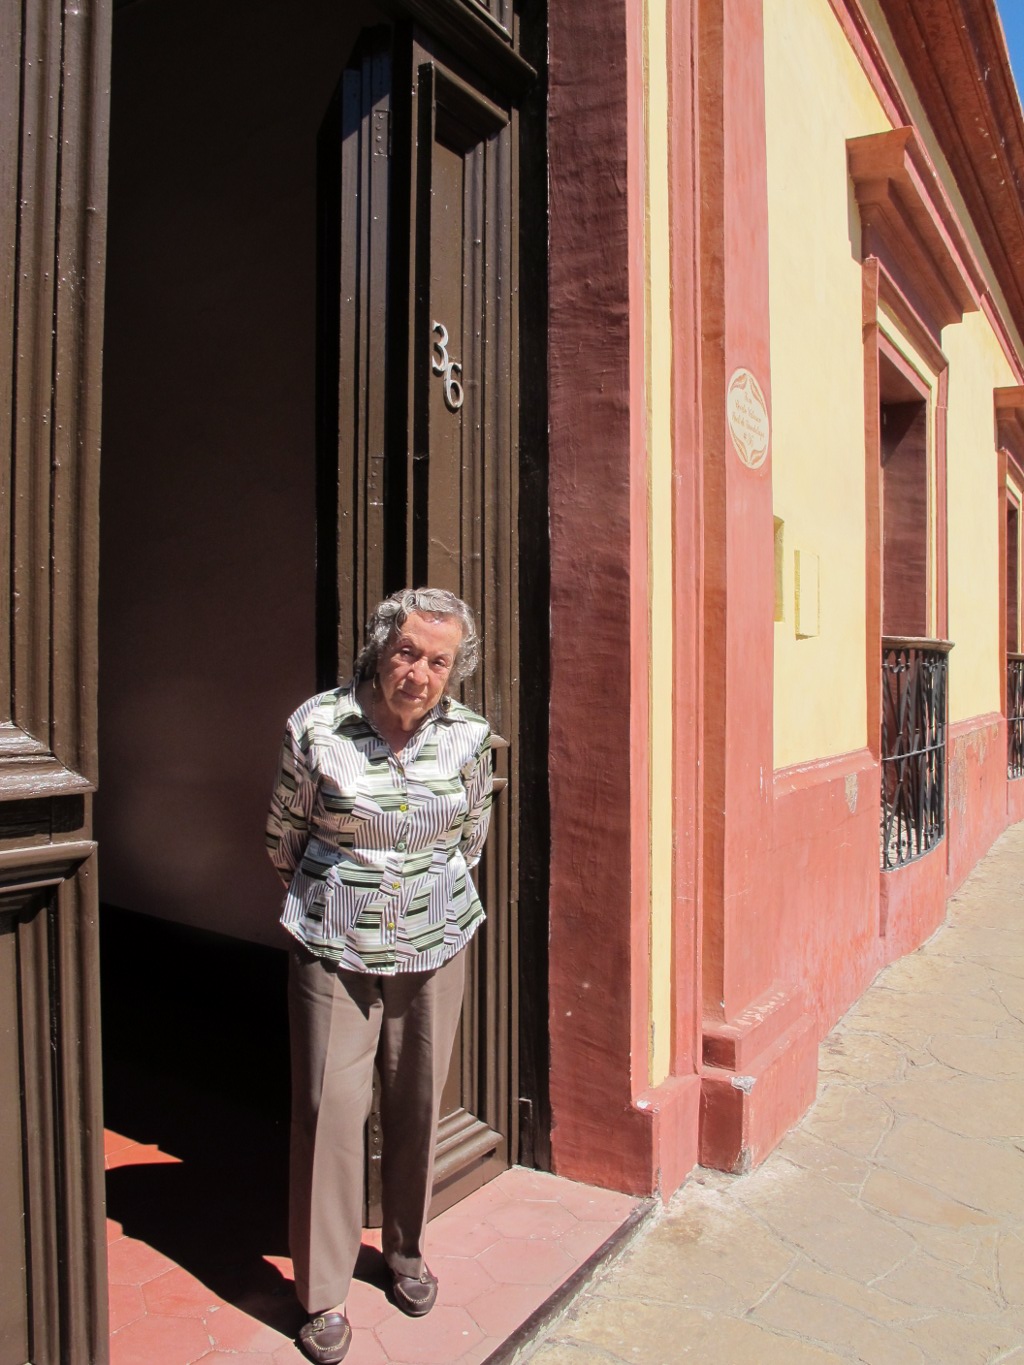 Familias de San Cristóbal conservan edificios históricos | Chiapasparalelo